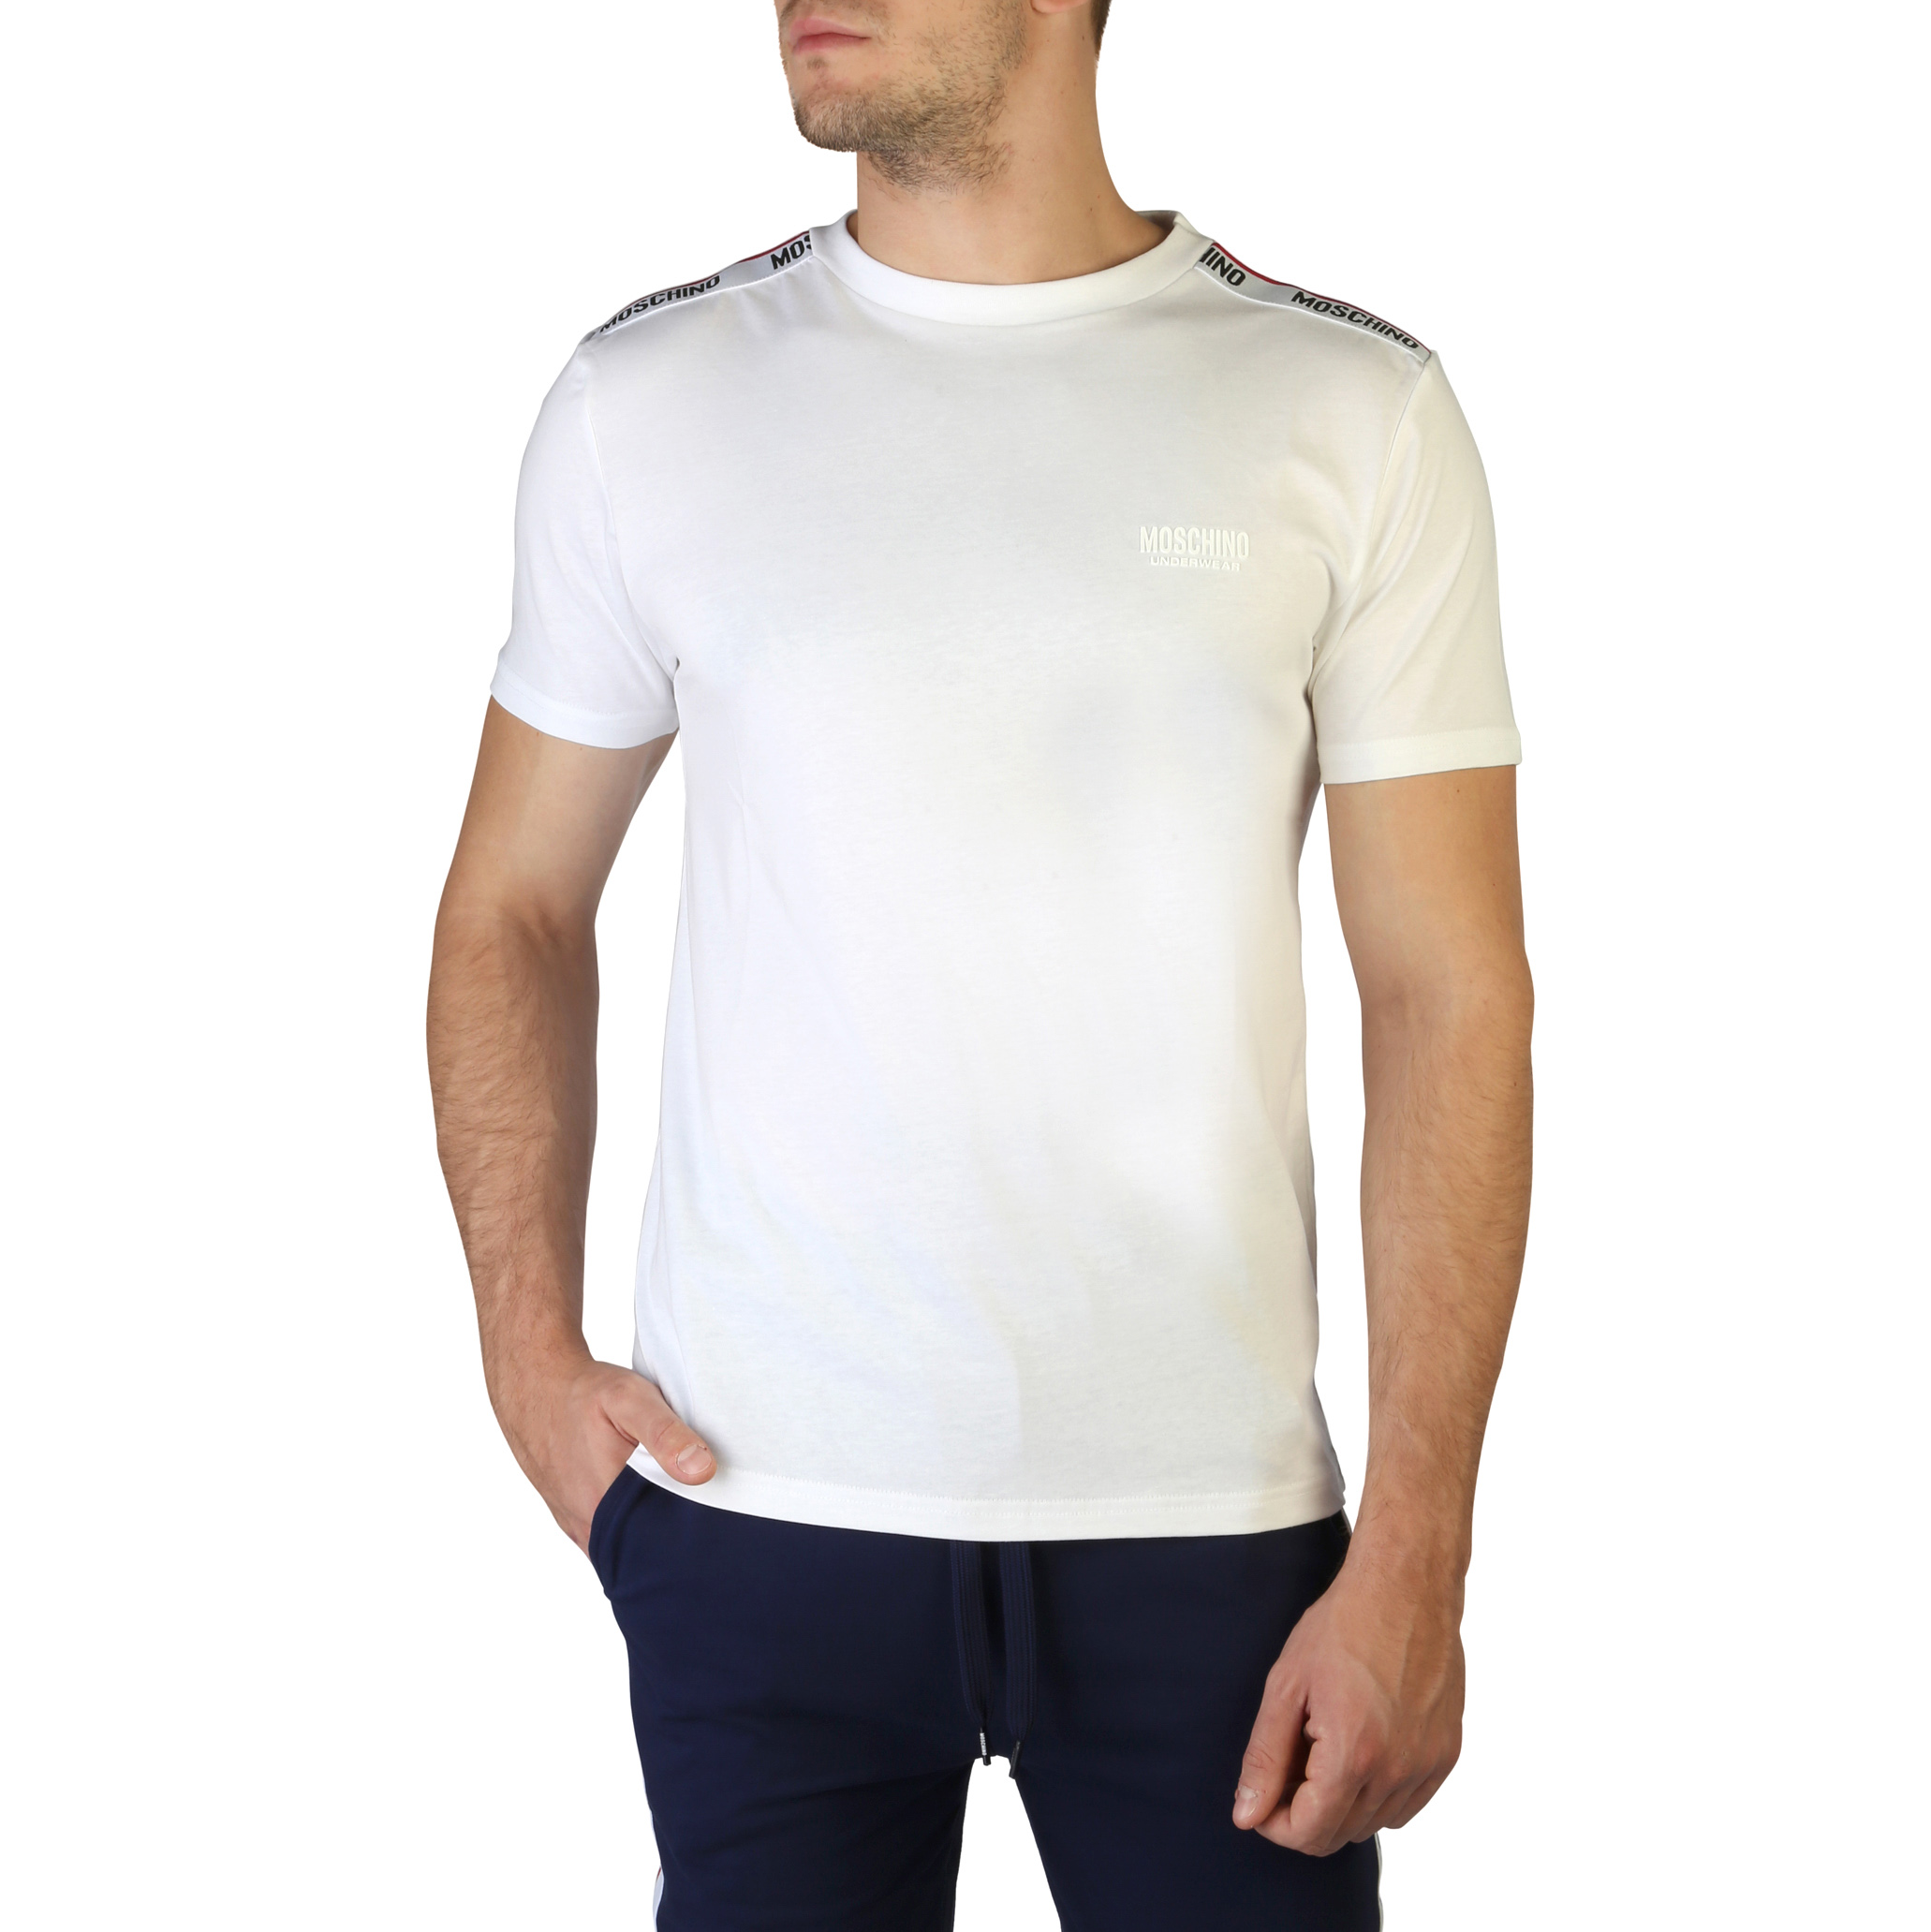 Moschino - T-shirt 1901-8101